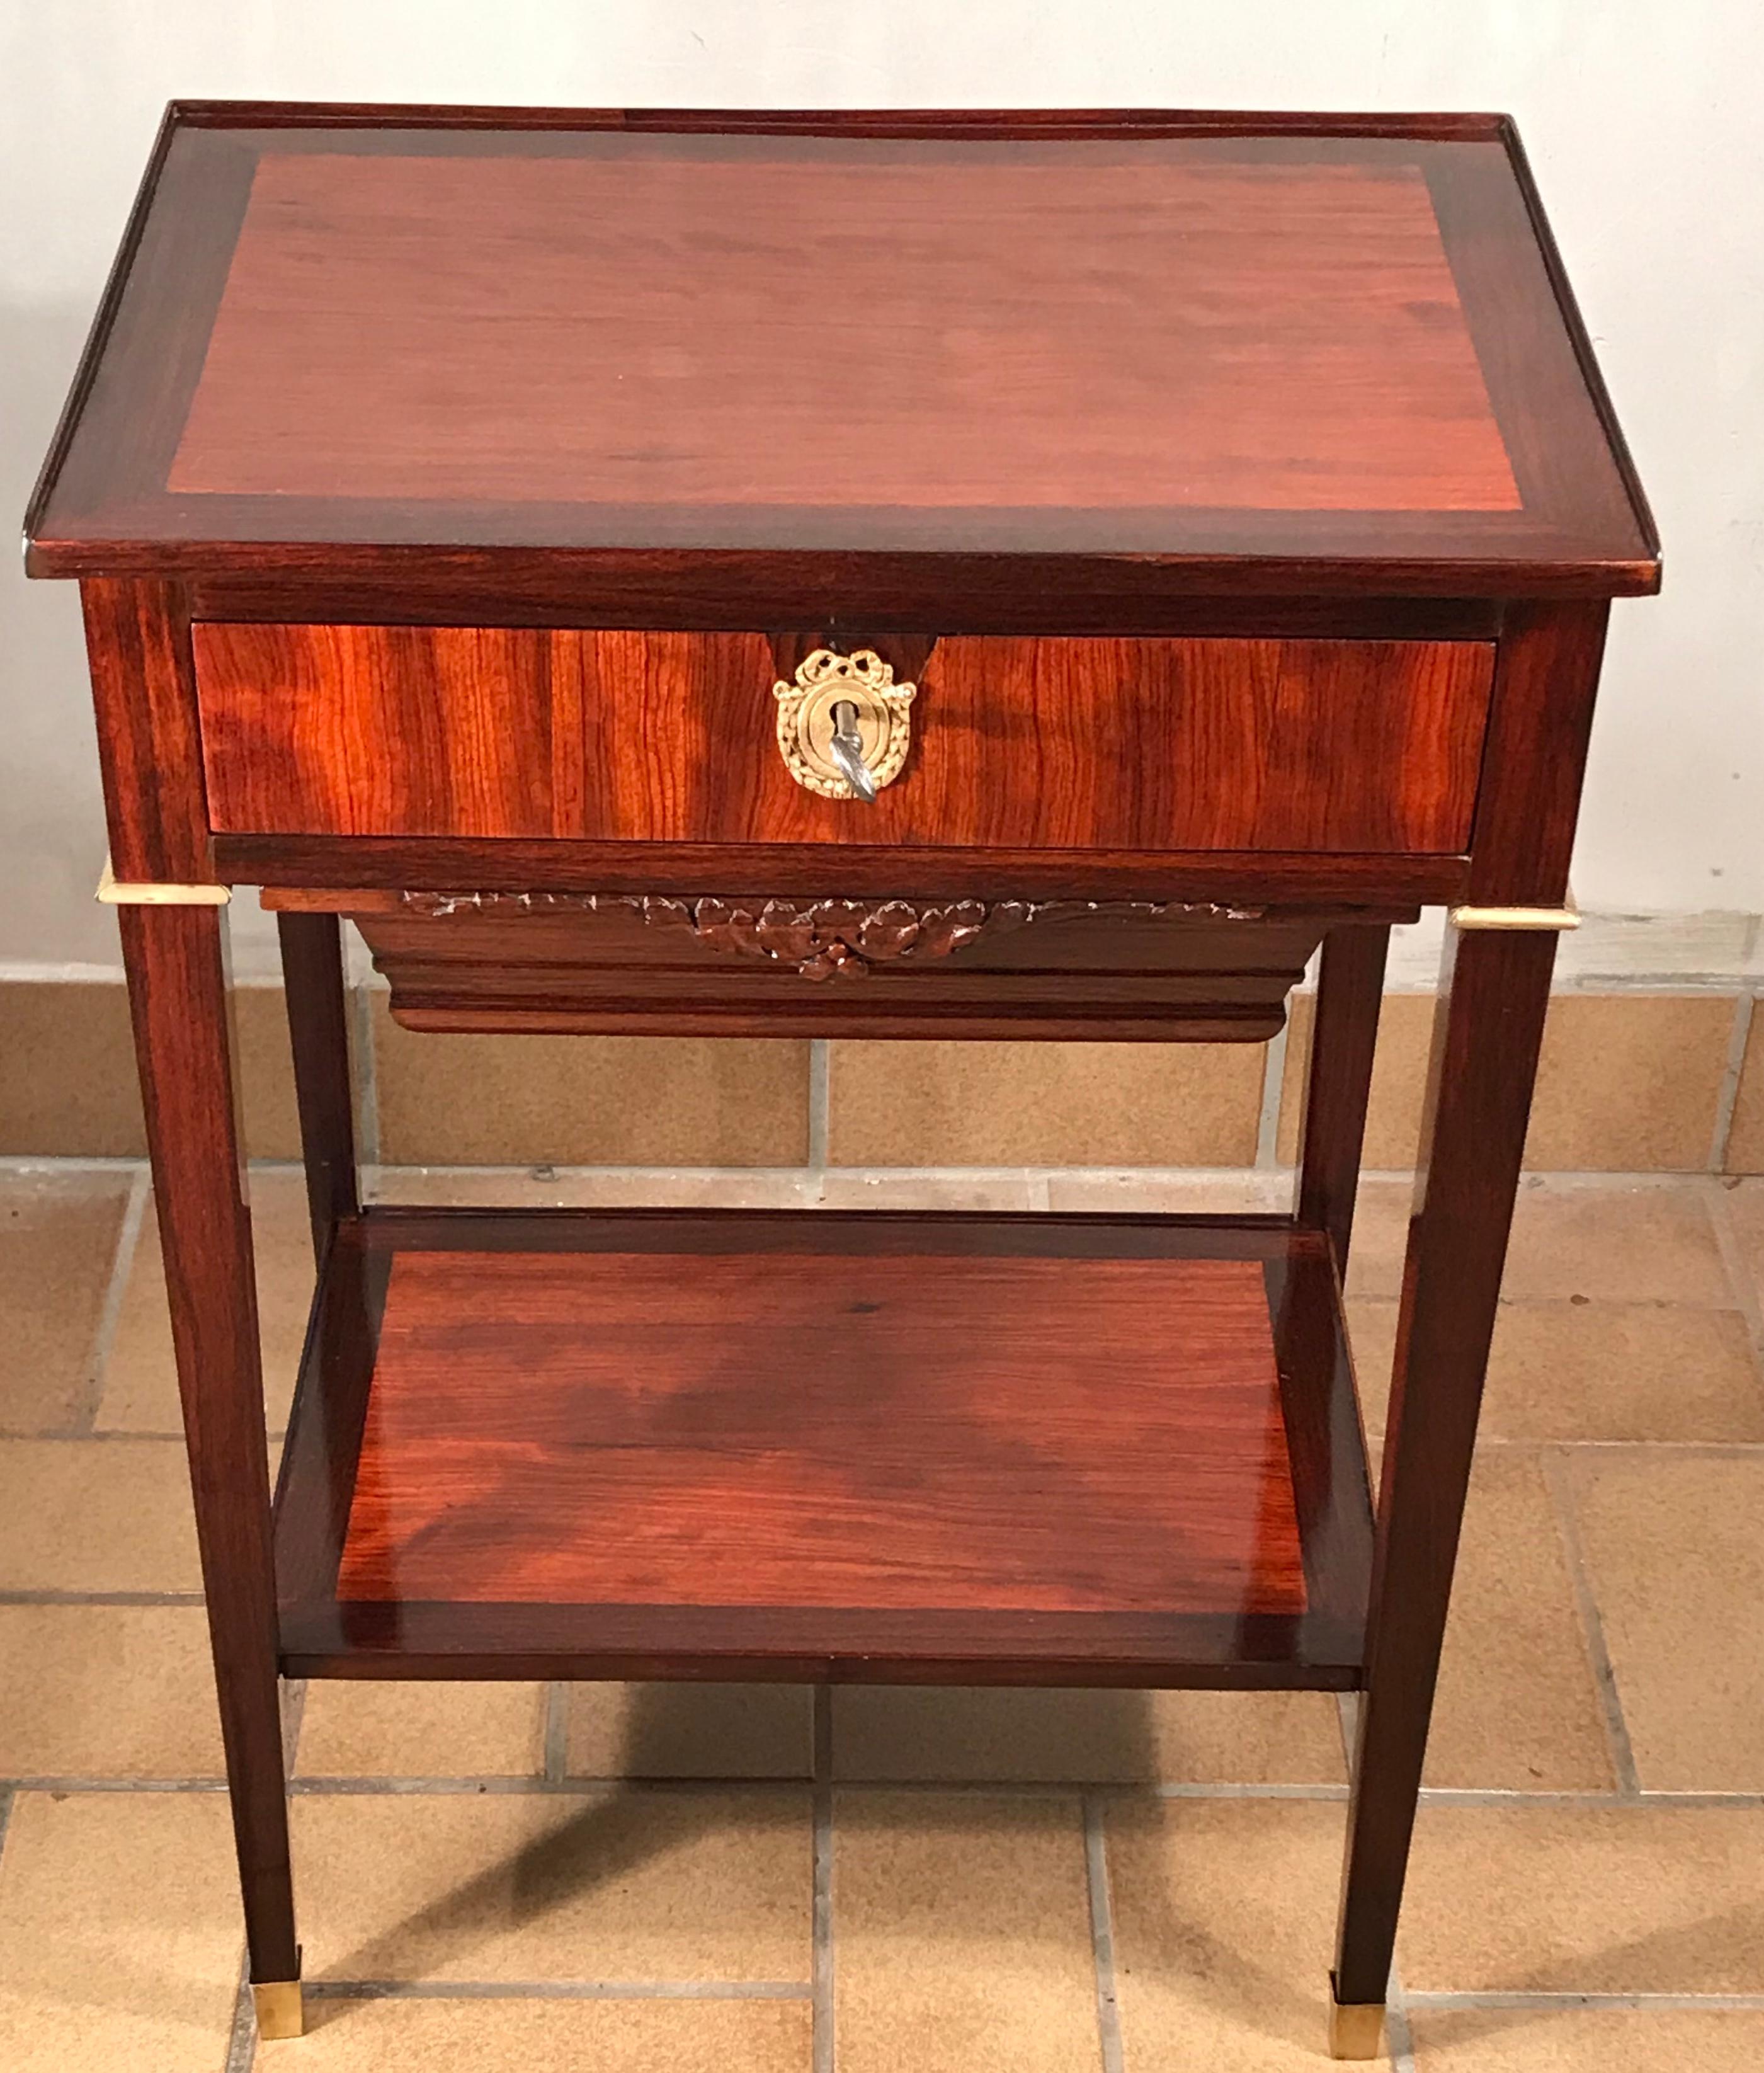 Französischer Näh- oder Beistelltisch, Stil Charles X oder Restauration 1810-1820.
Der Tisch ist mit einem schönen Satinholz- und Königsholzfurnier verziert. Es hat eine zentrale Schublade und darunter eine Schublade für Wolle mit einer hübsch